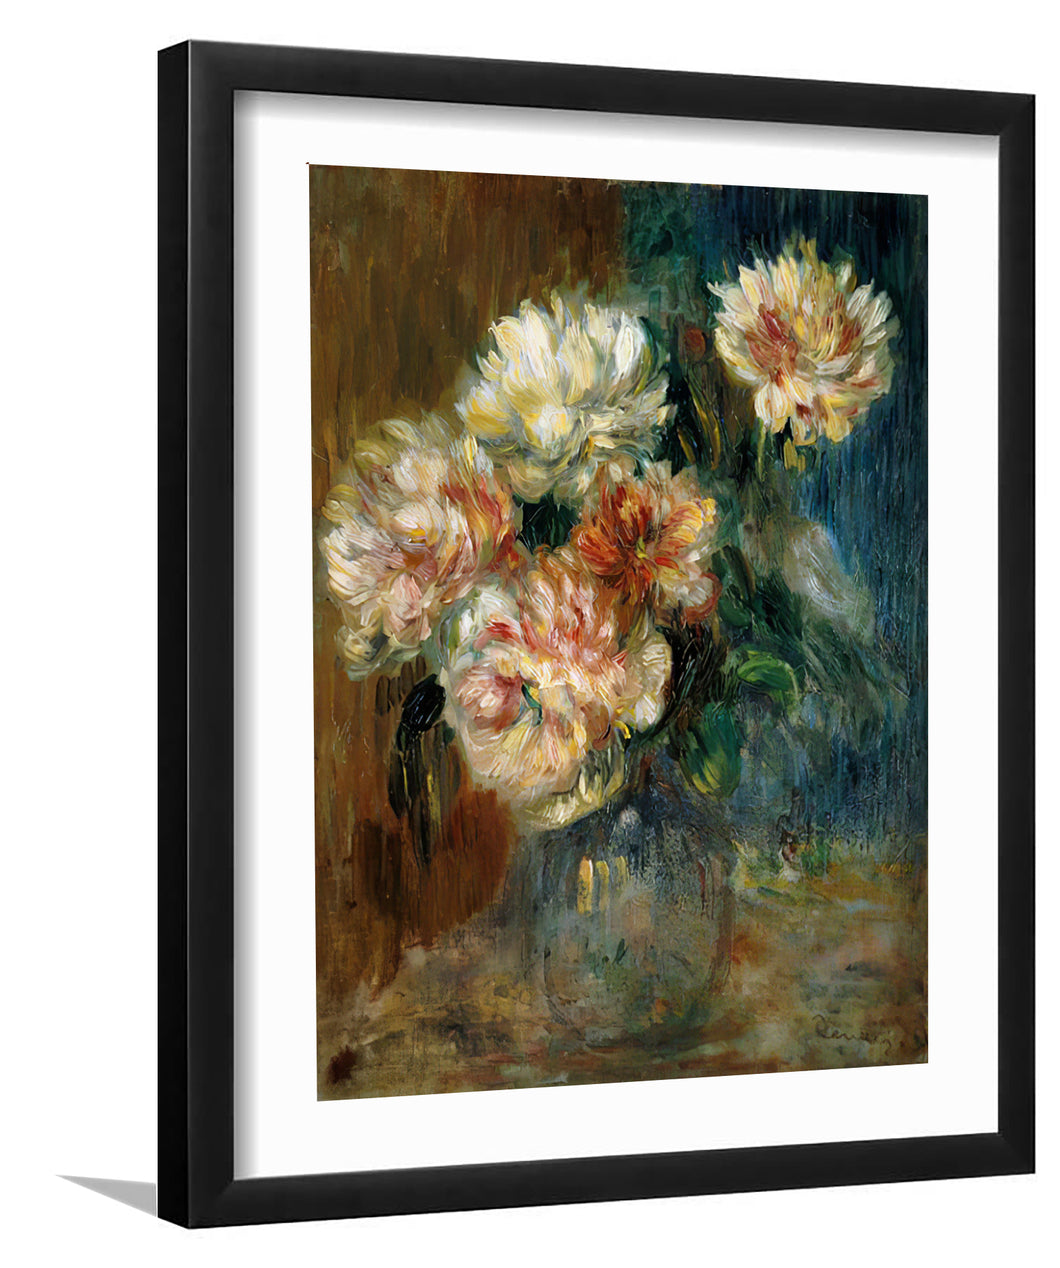 Vase of peonies_Pierre Auguste Renoir-Art Print,Frame Art,Plexiglass Cover